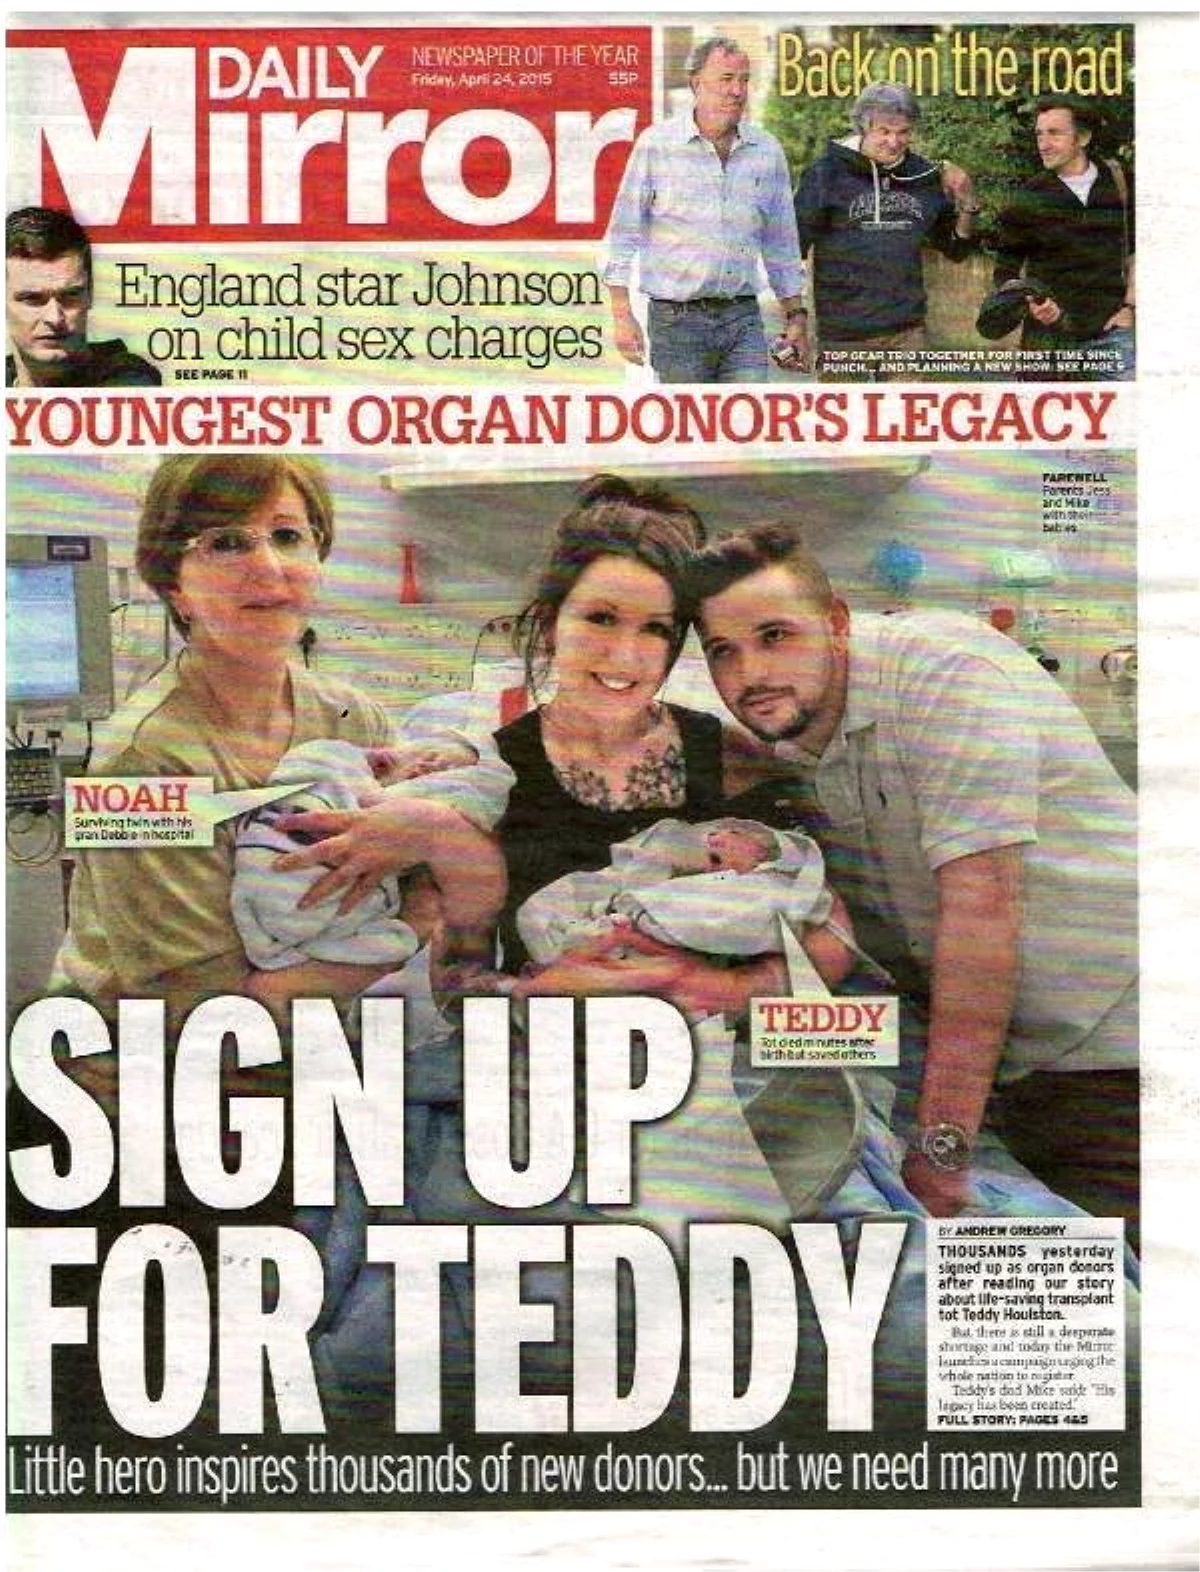 Daily Mirror: "Teddy İçin İmza Verin"